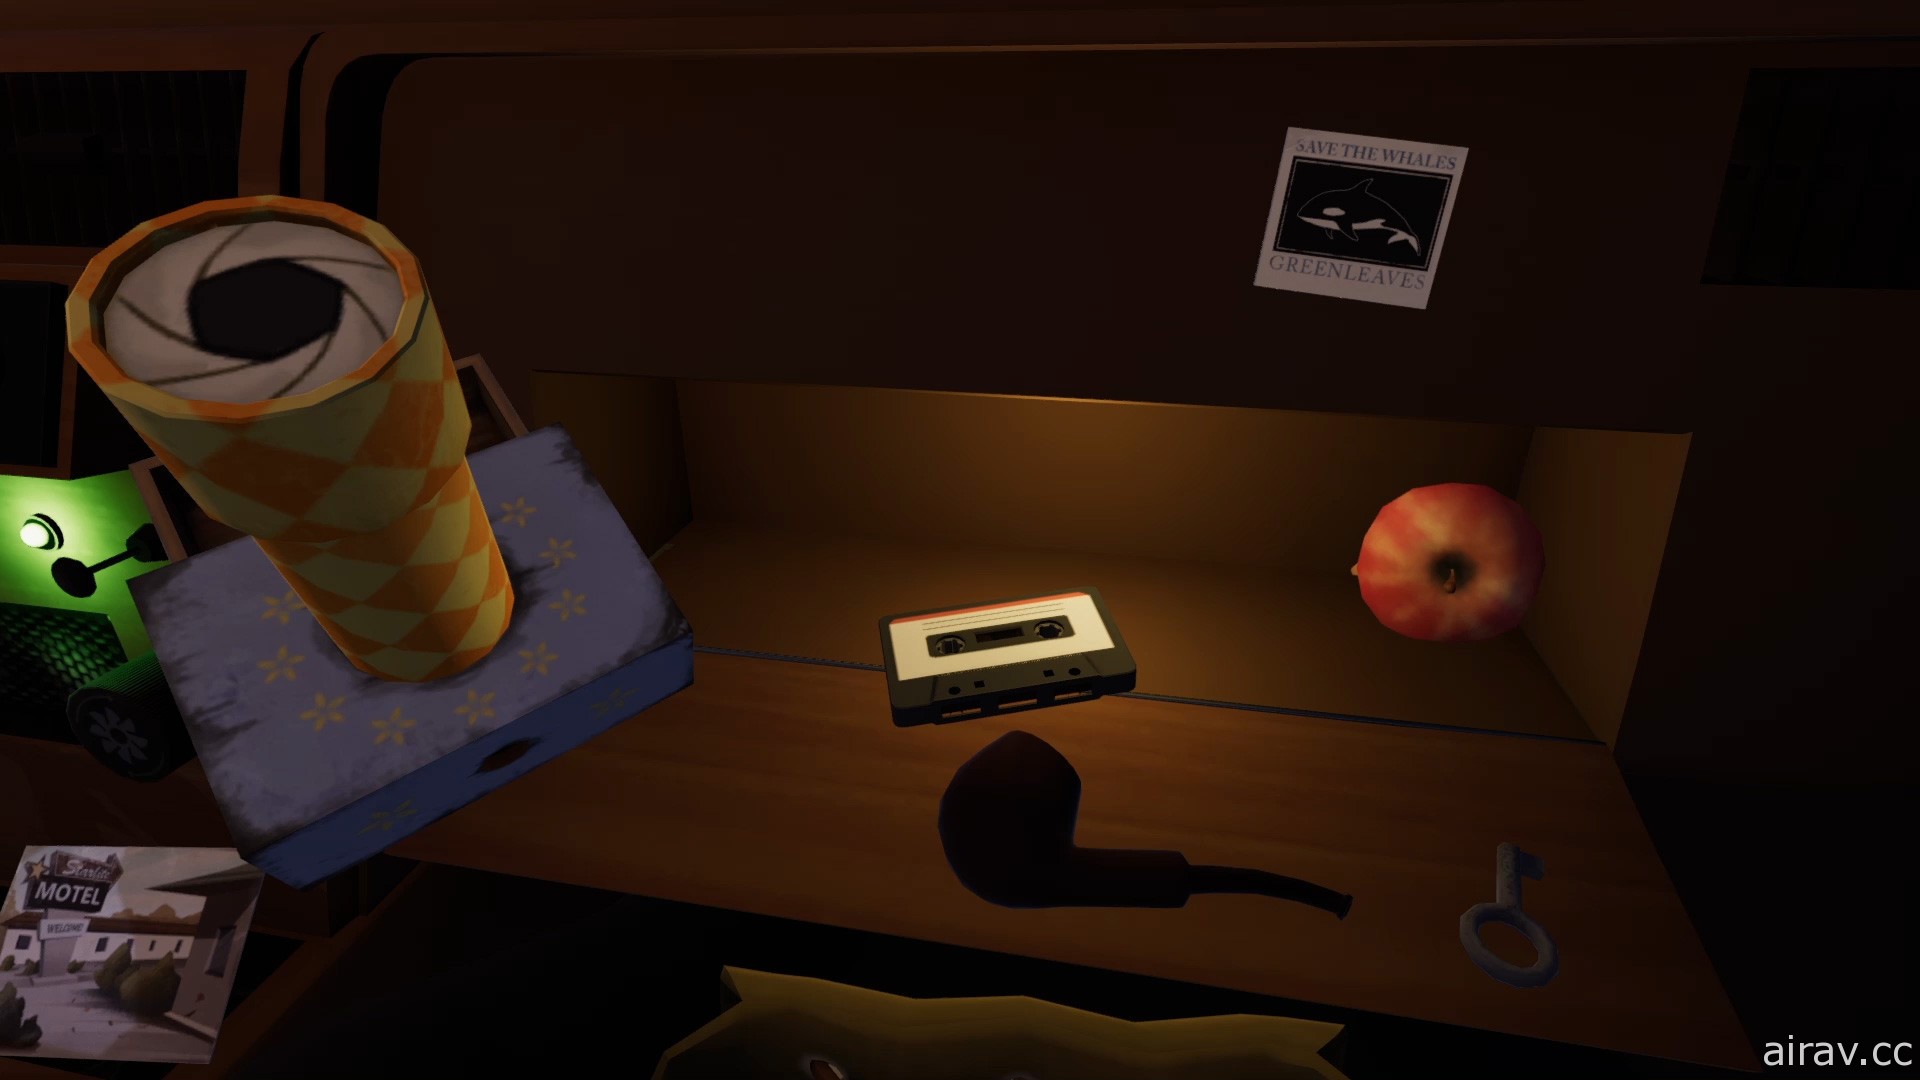 神祕冒险游戏《便车旅人》将登陆 Apple Arcade 平台 搭乘便车揭开神秘黑暗的过去